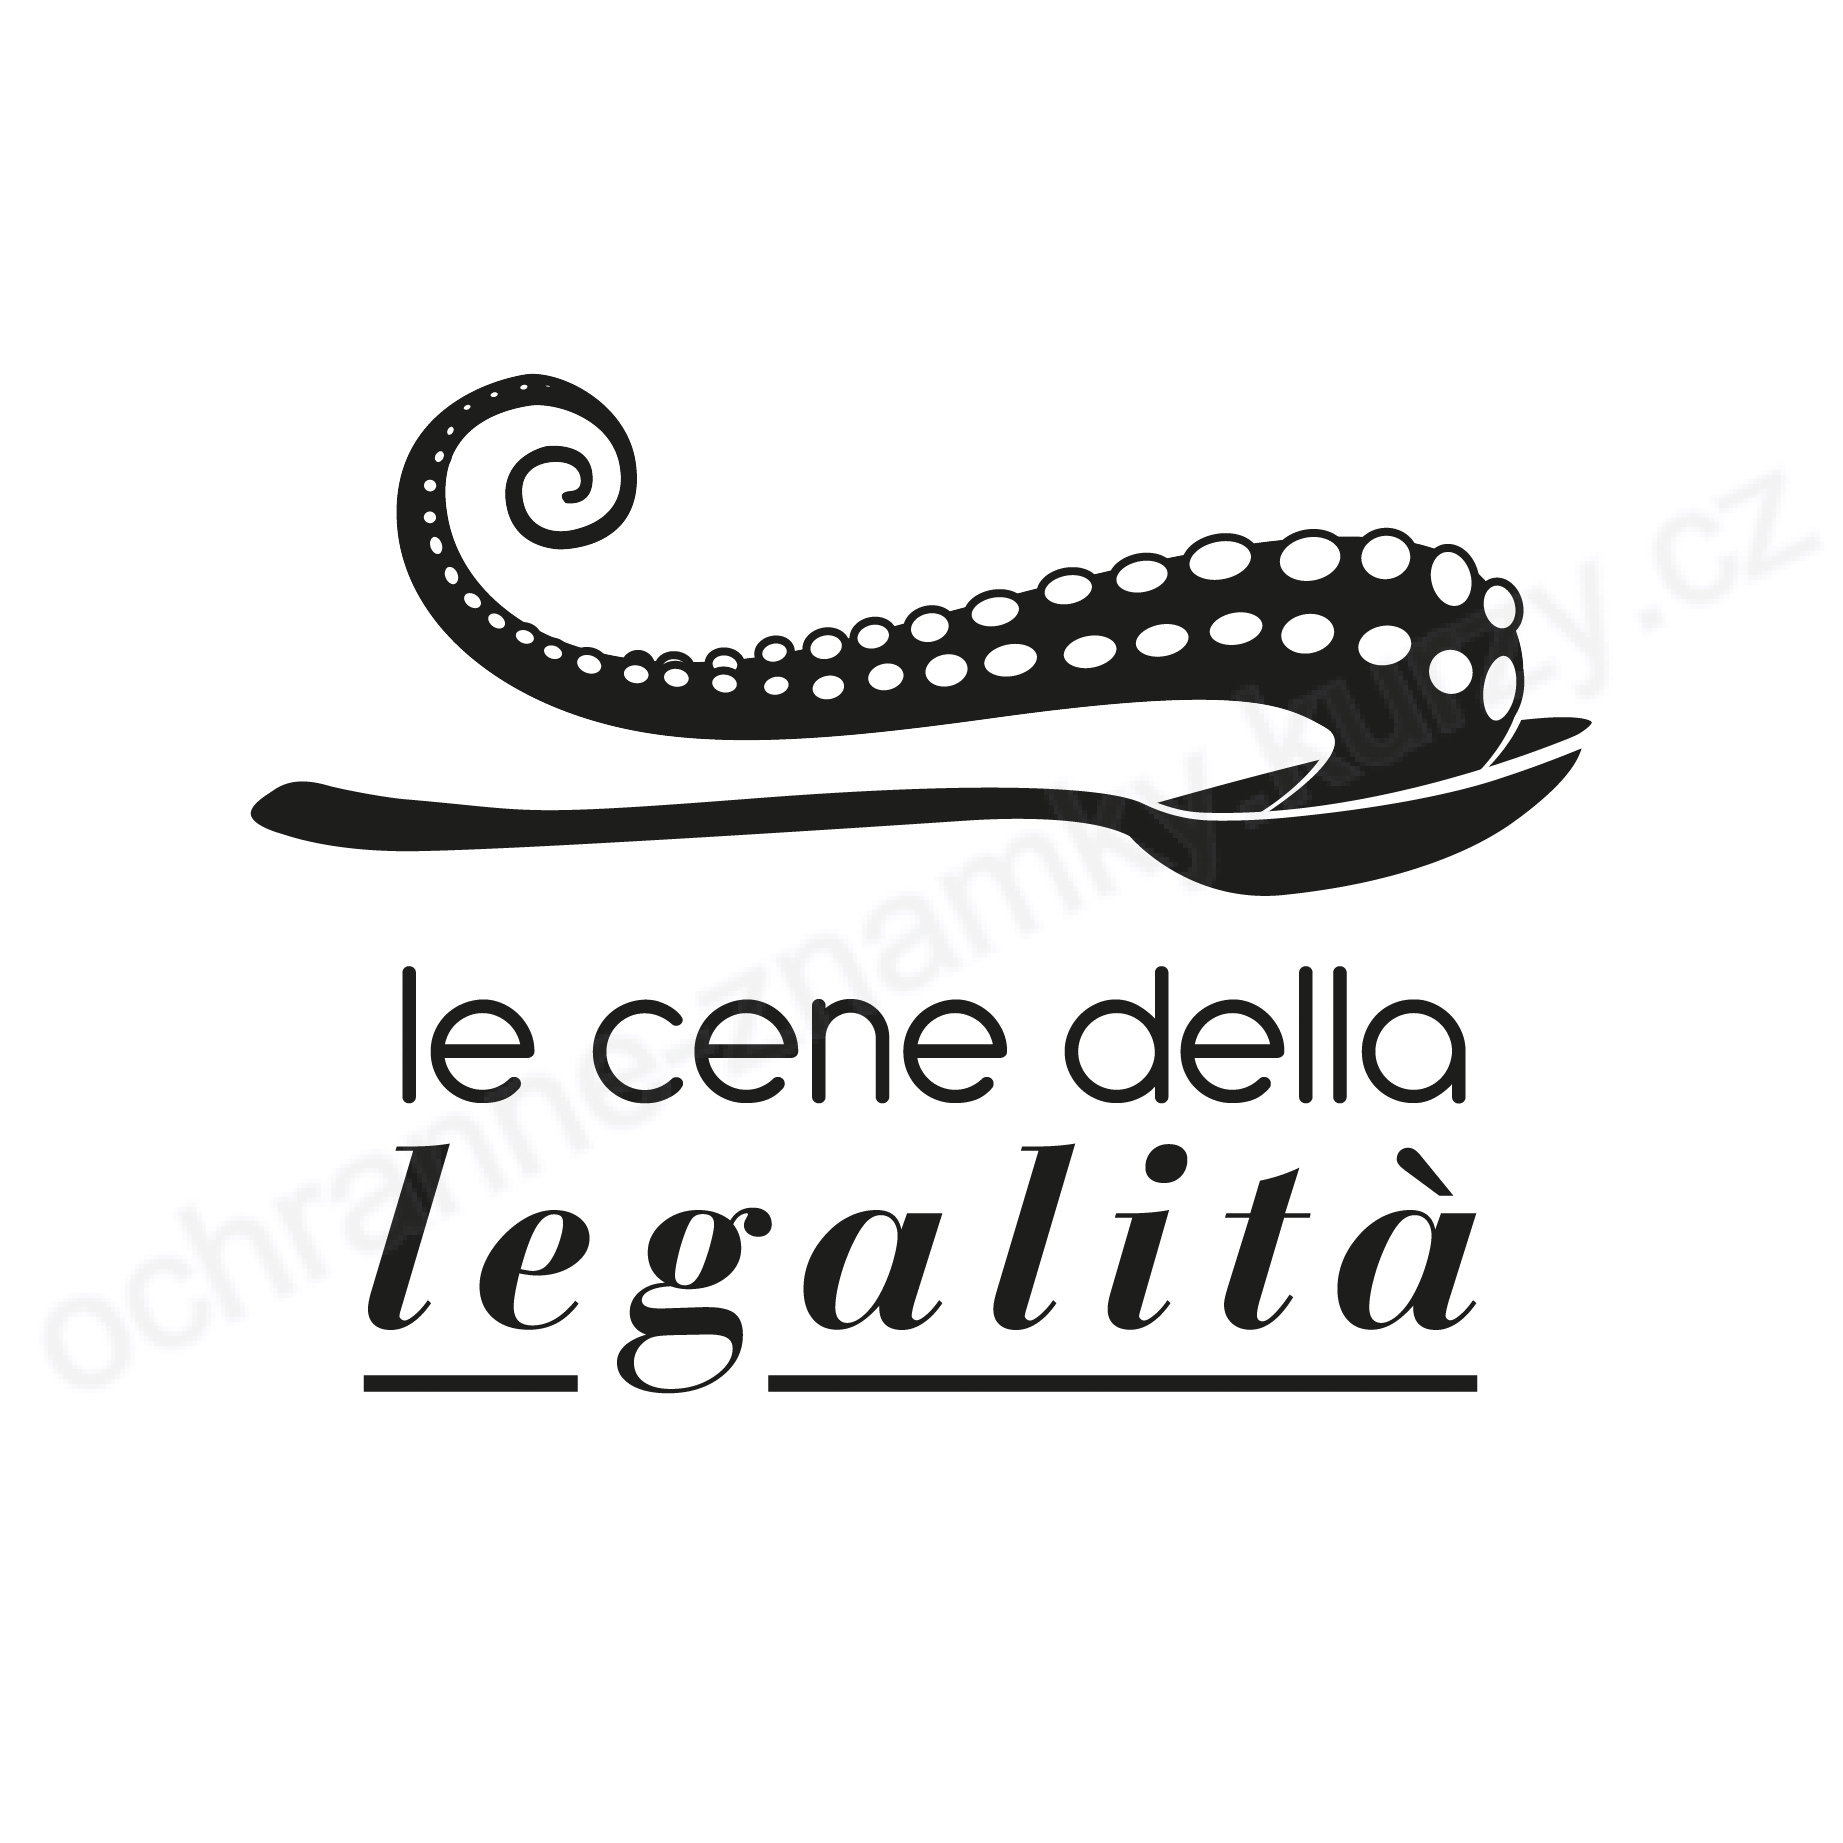 le cene della legalita logo